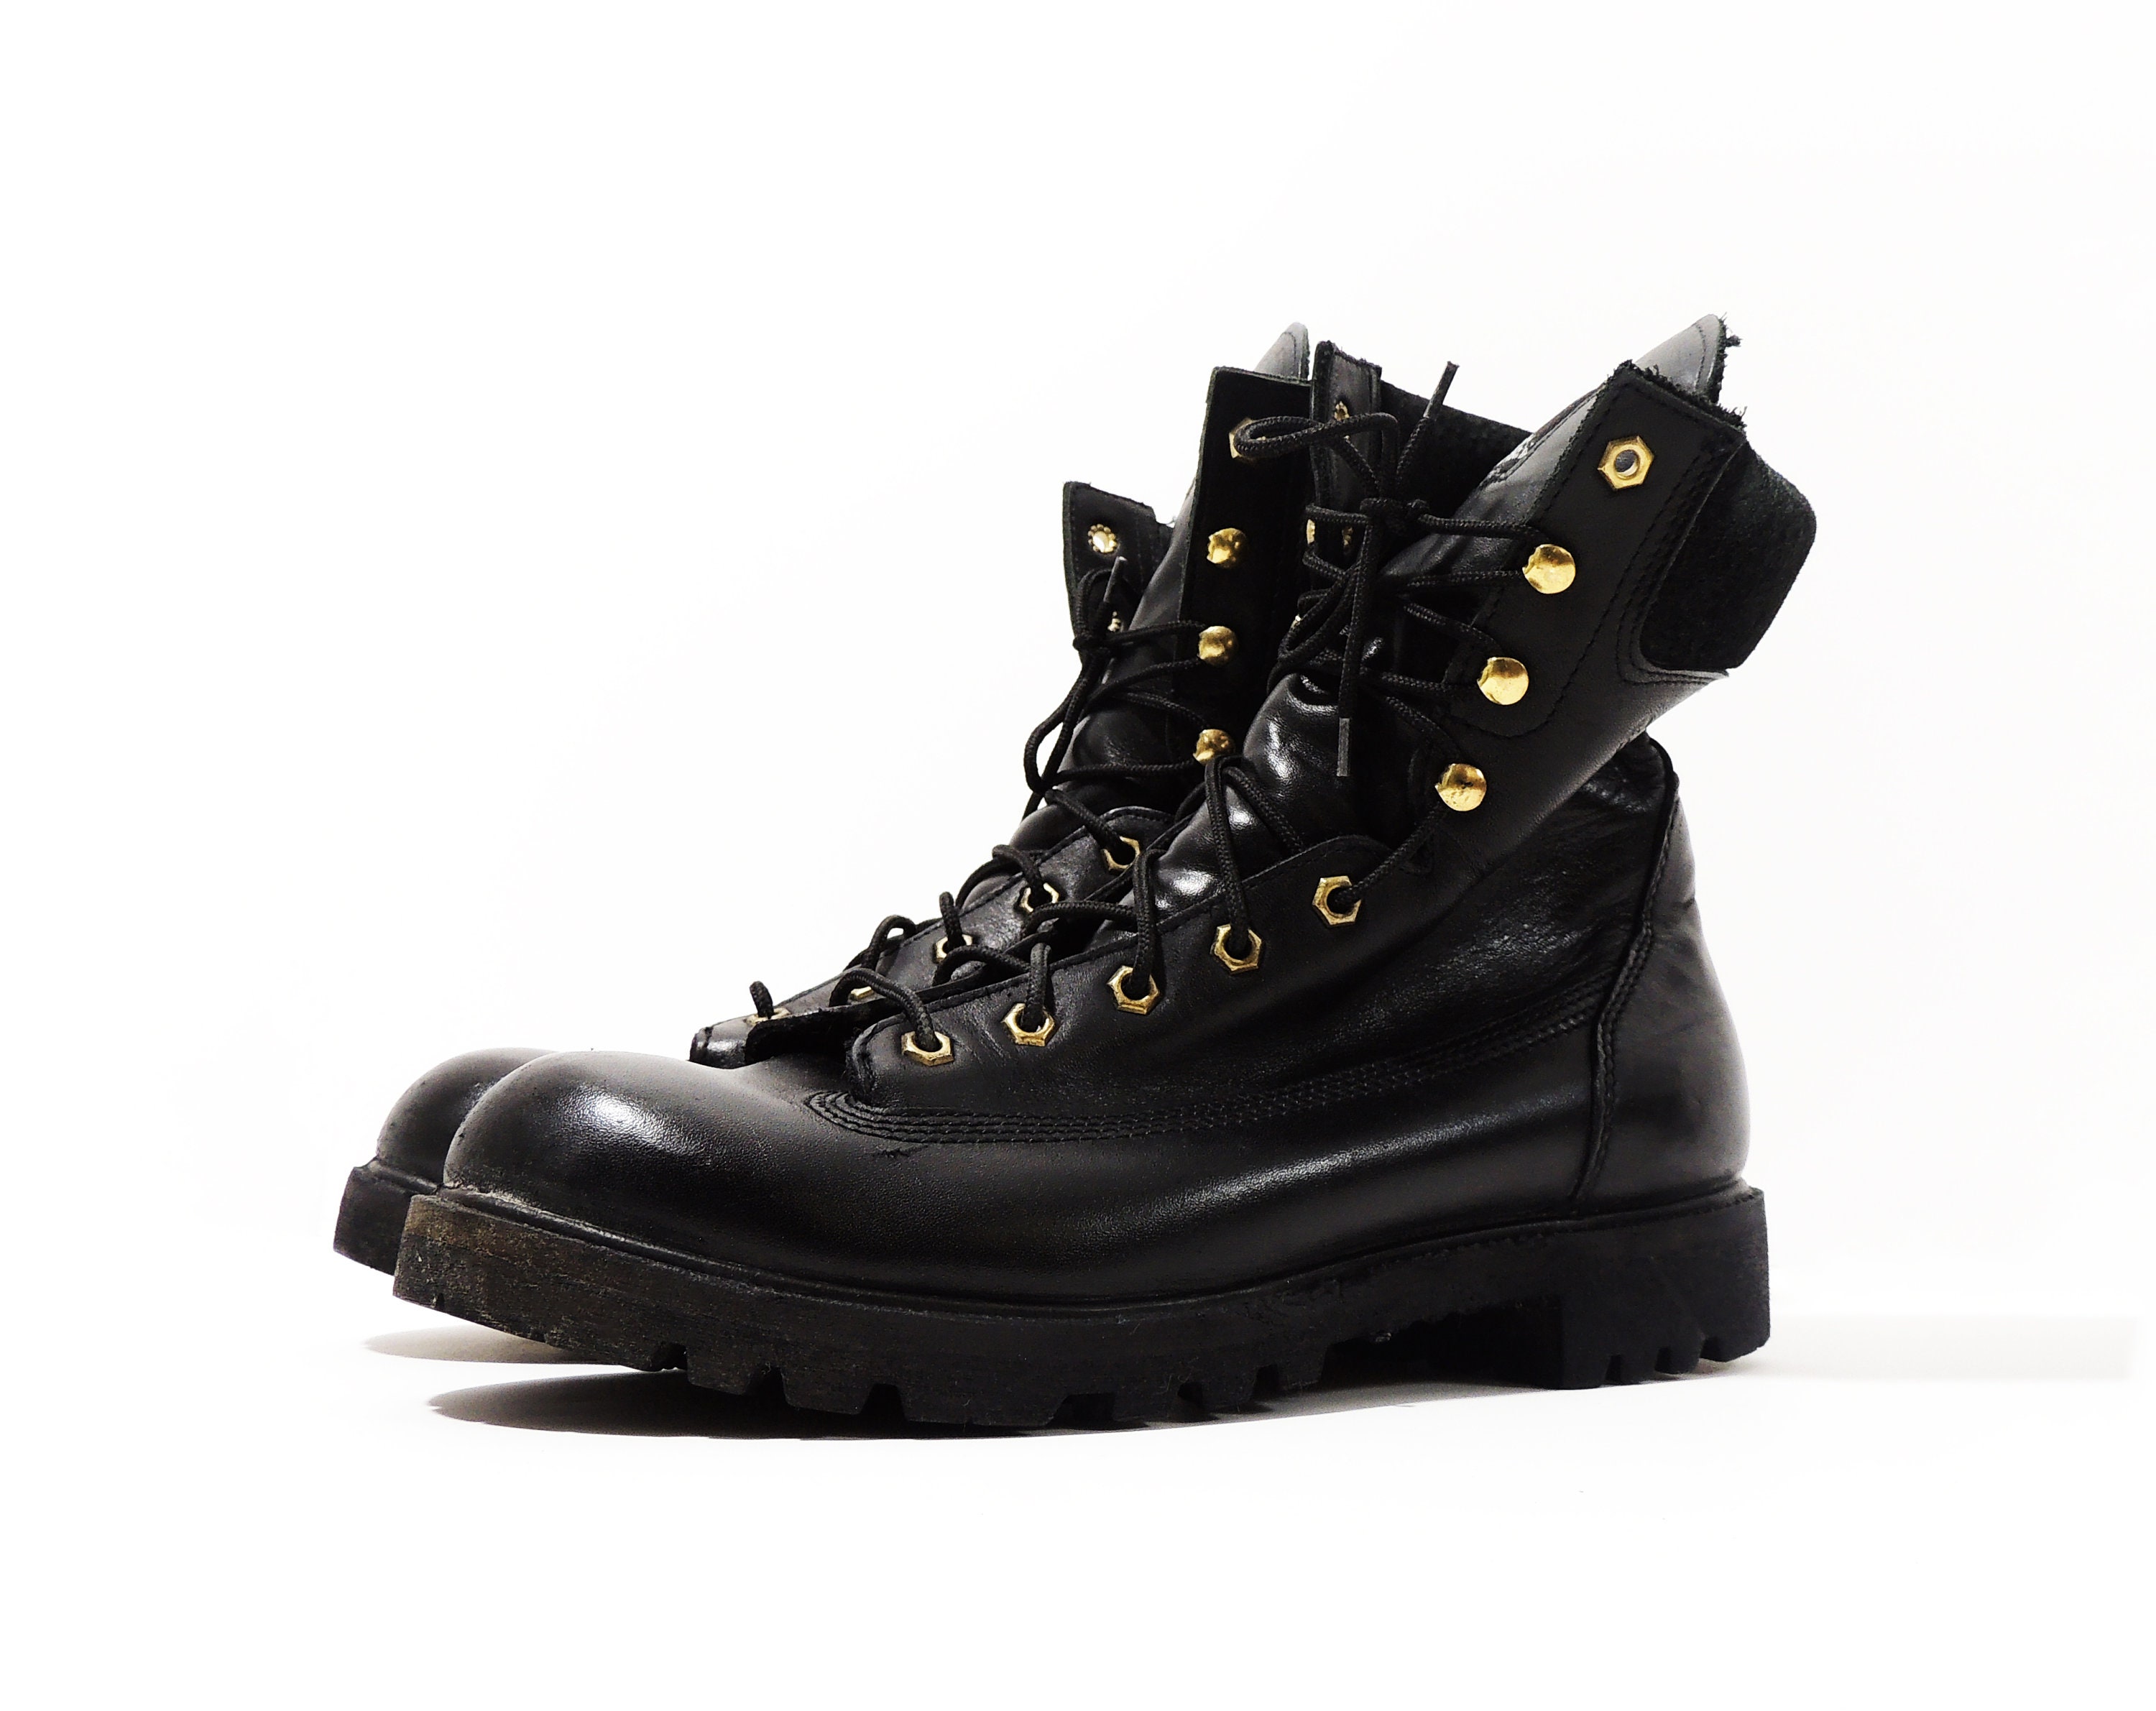 Zapatos Zapatos para hombre Botas Botas de trabajo y estilo militar Original Herman Supervivientes Botas Negras talla 11 